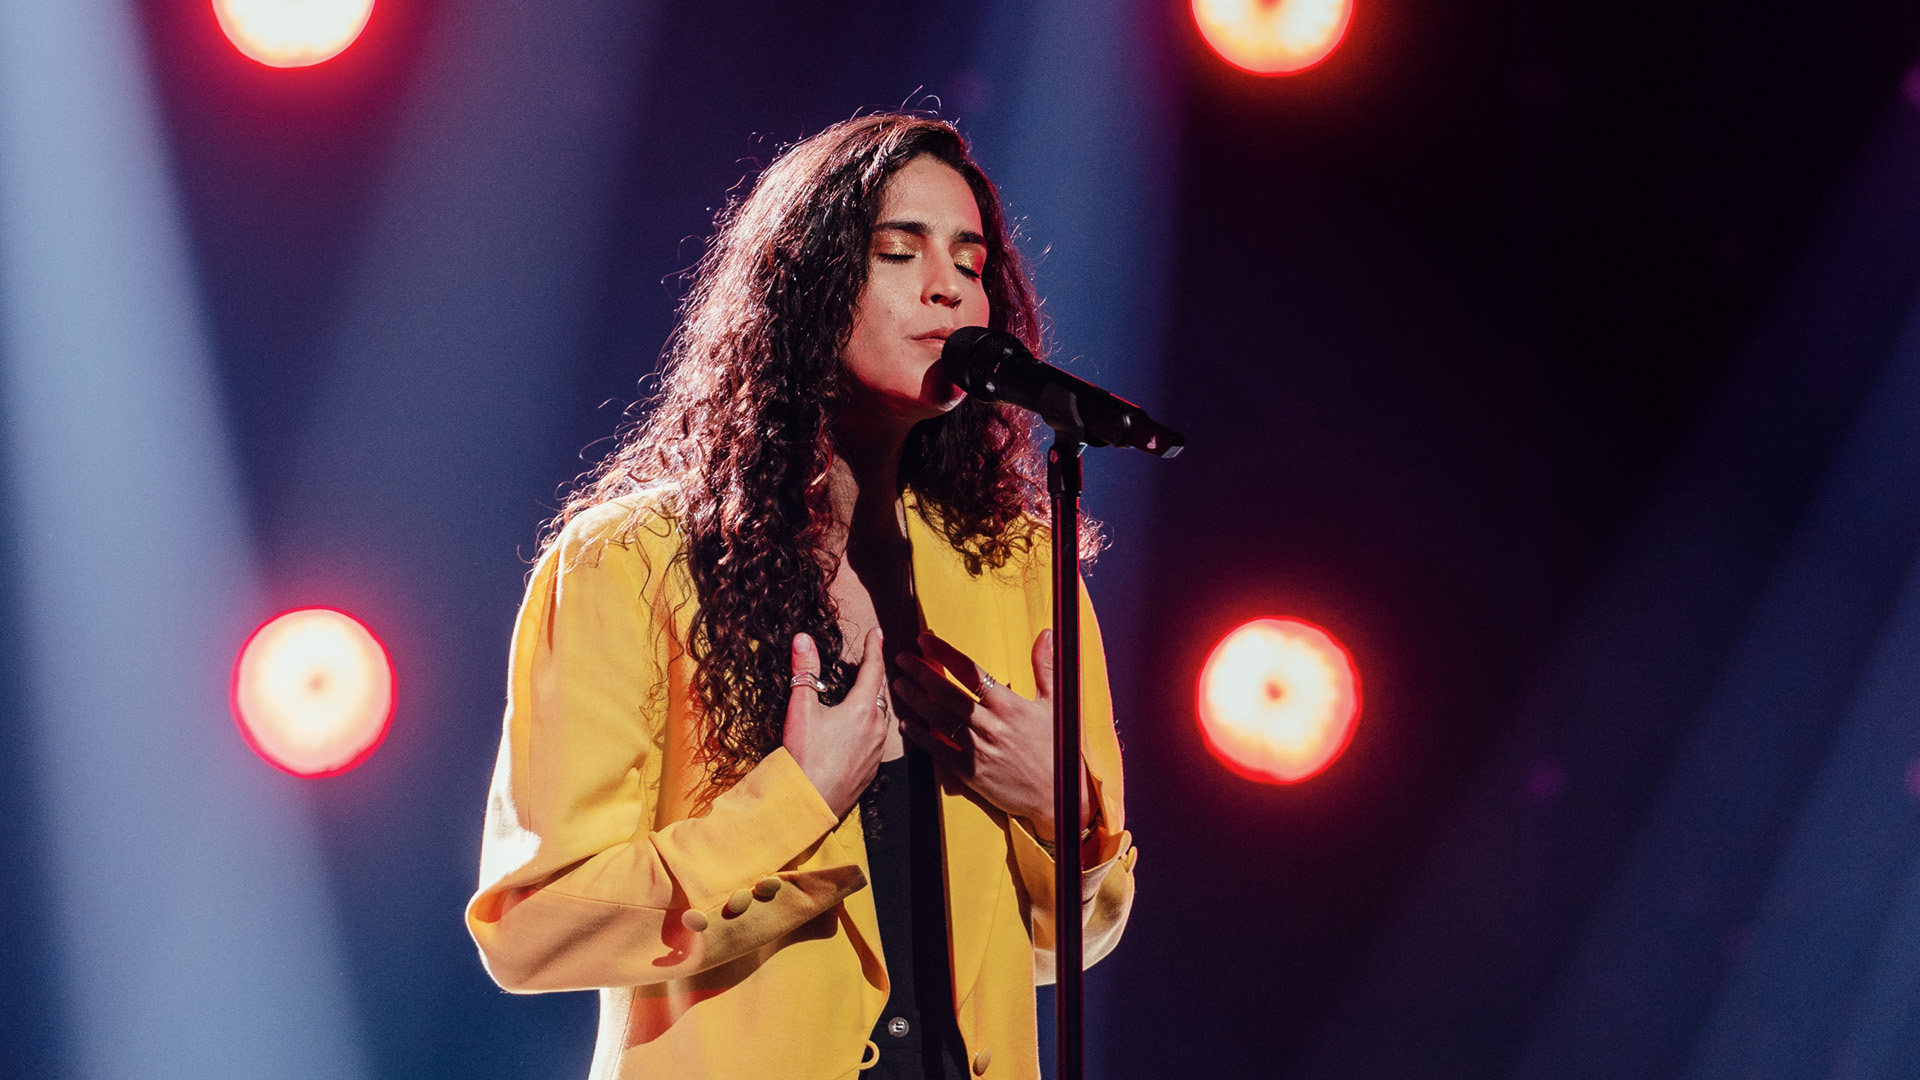 Maro wins Festival da Canção and will represent Portugal at Eurovision 2022